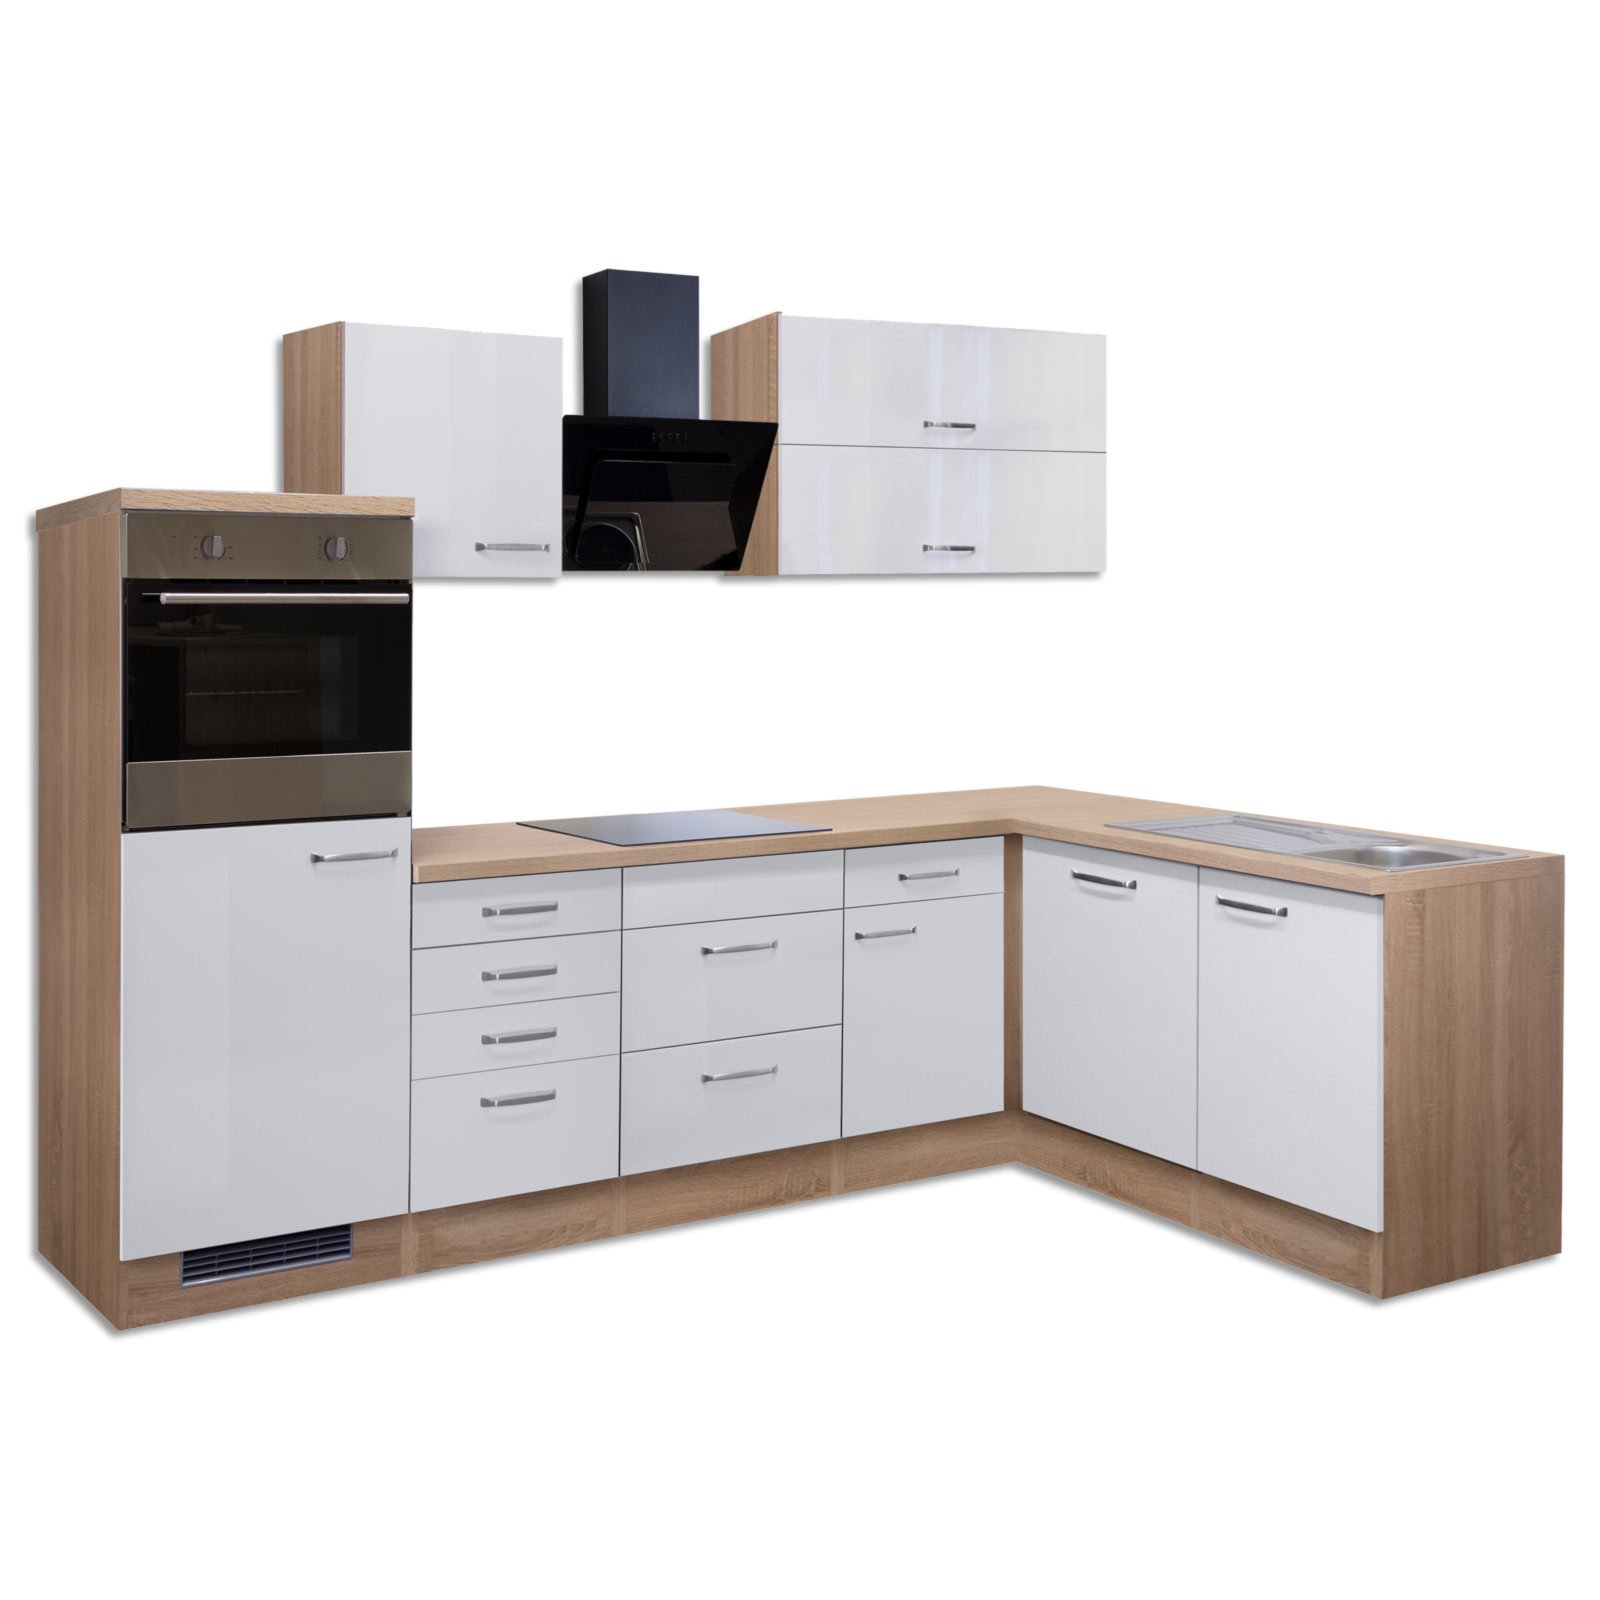 Winkelküche VALERO - weiß Hochglanz-Sonoma Eiche - mit E-Geräten - 280x170  cm | Online bei ROLLER kaufen | L-Küchen